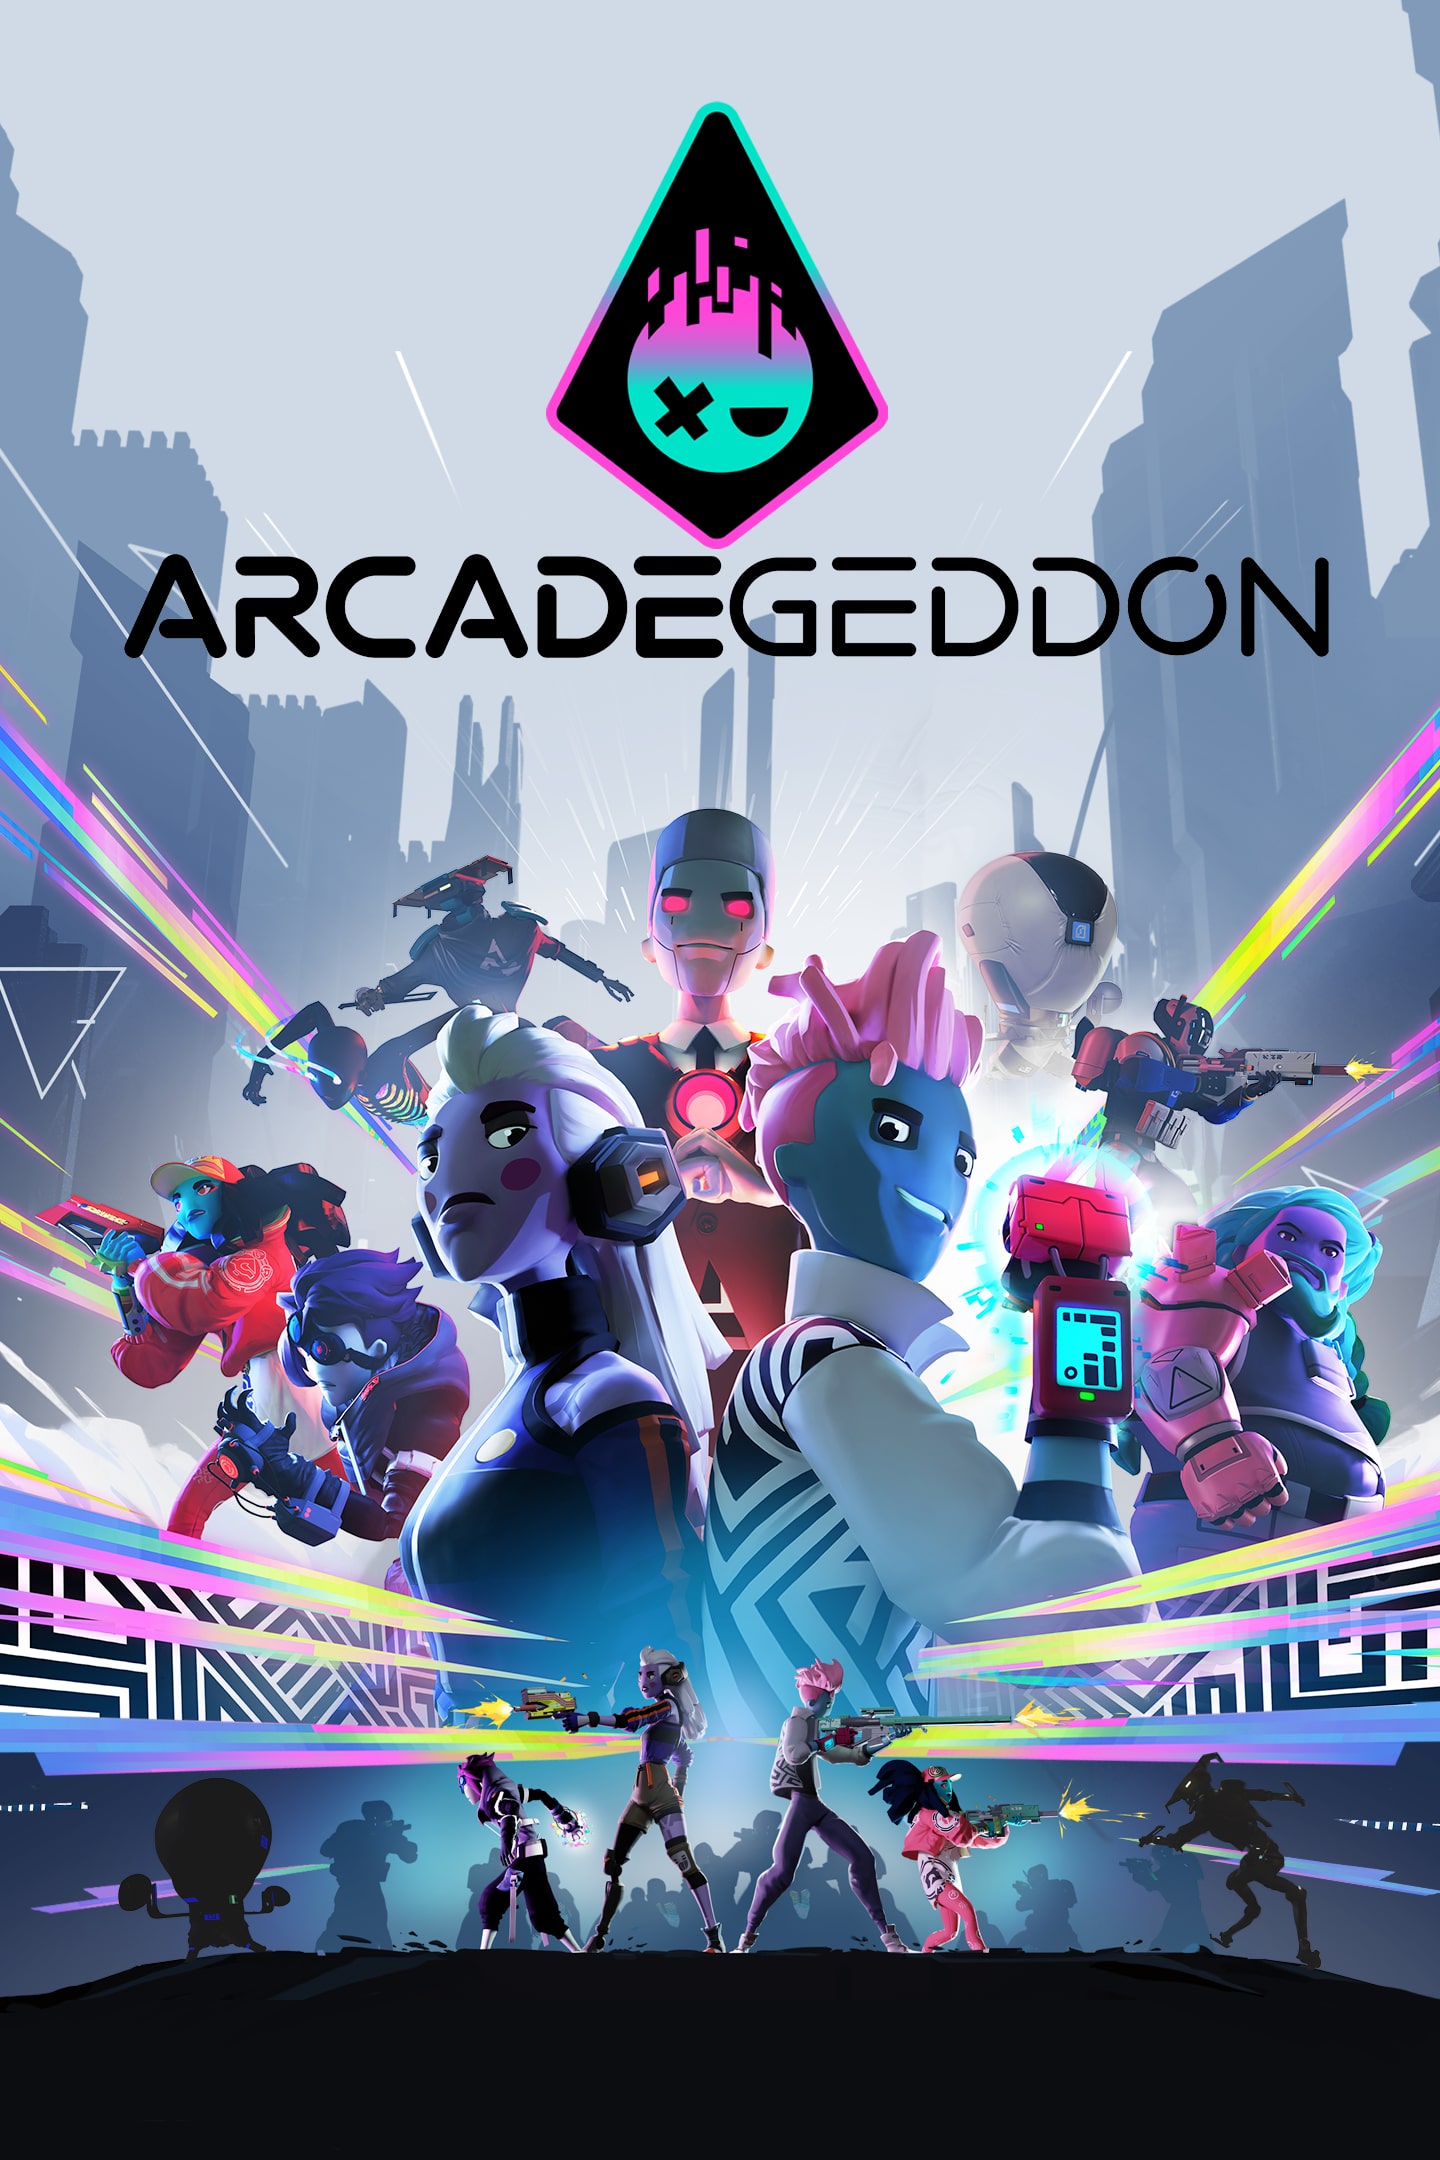 arcadegeddon release date